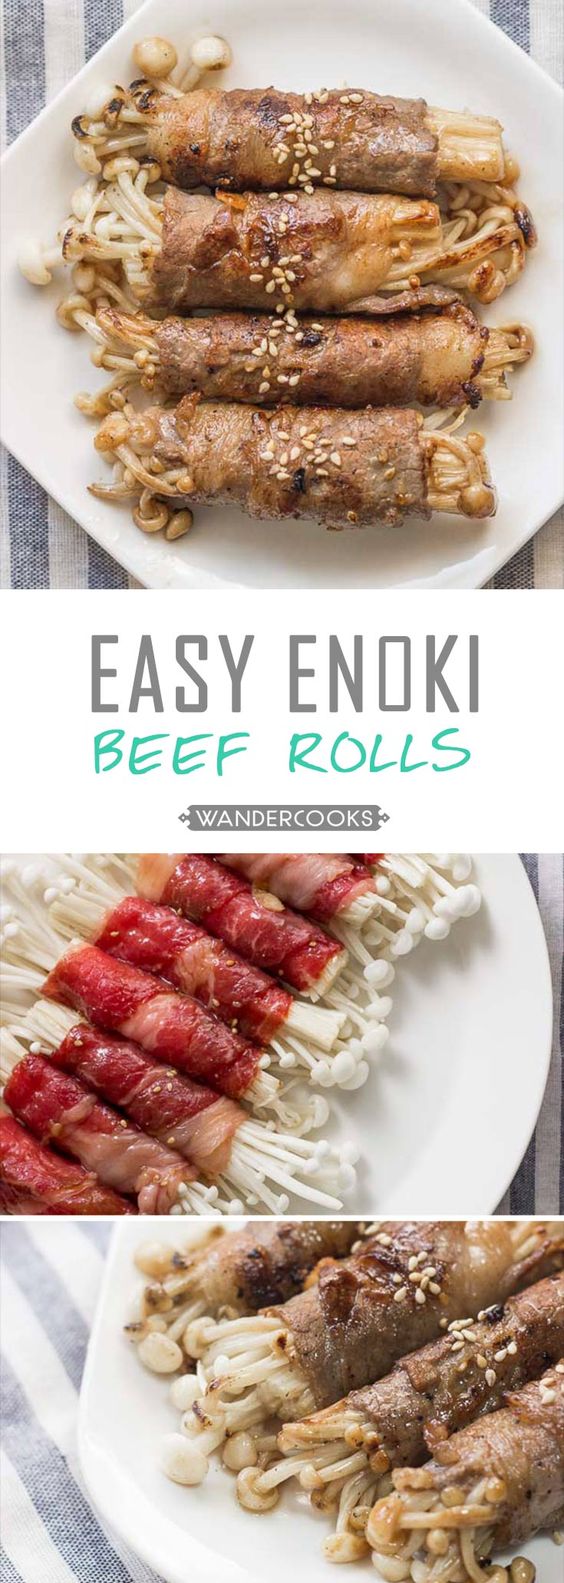 Easy Enoki Beef Rolls